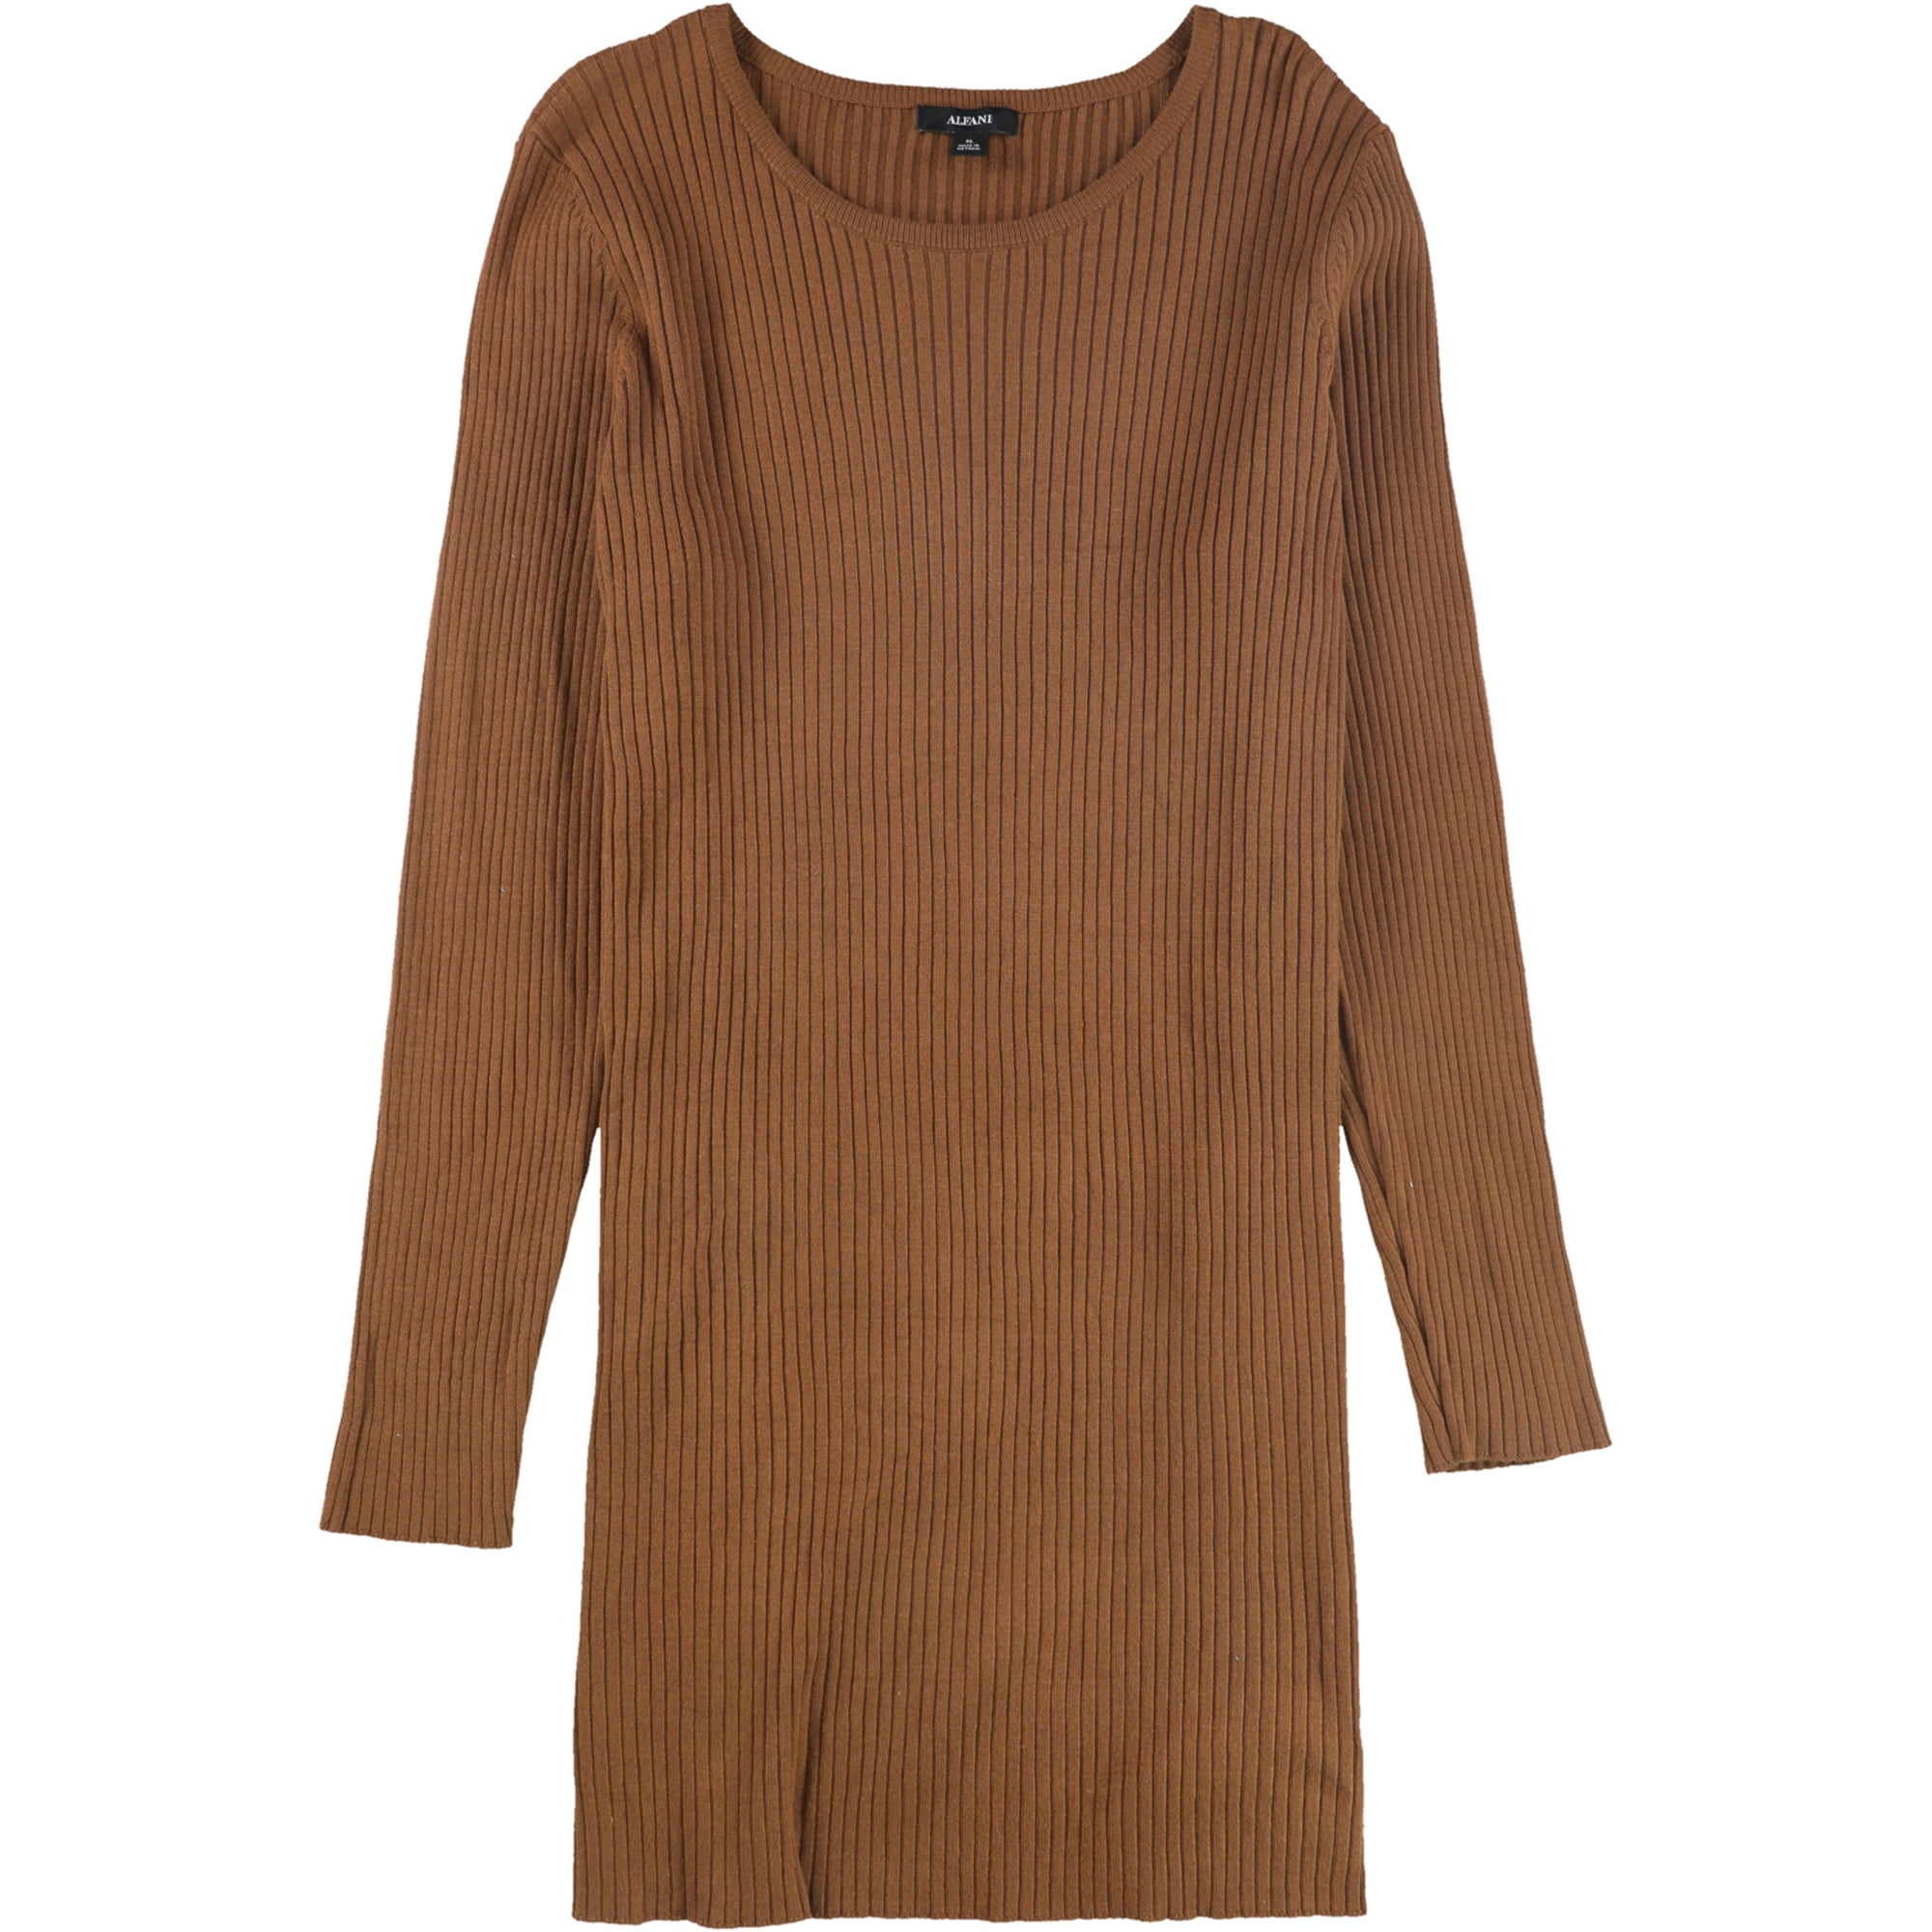 Alfani suéter tipo túnica acanalado para mujer, marrón, mediano Alfani Sayo